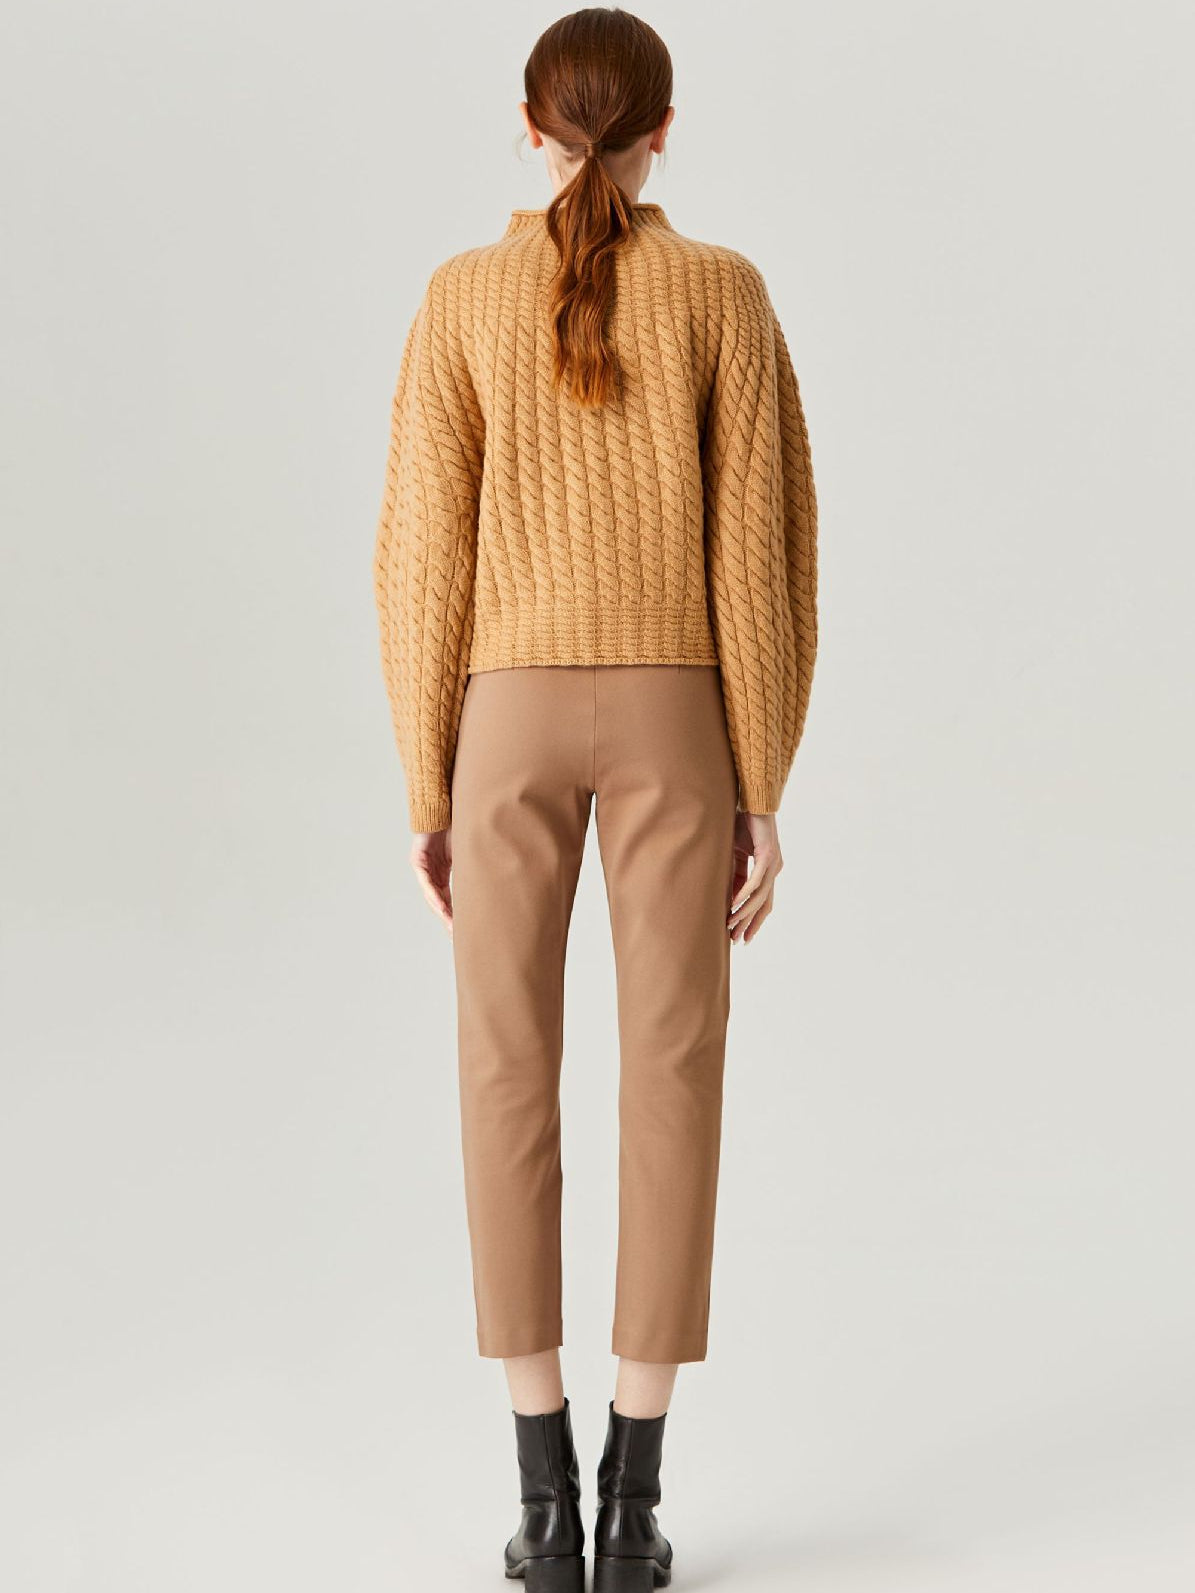 Adoring Heart Tangerine Knit Turtleneck Wool Sweater